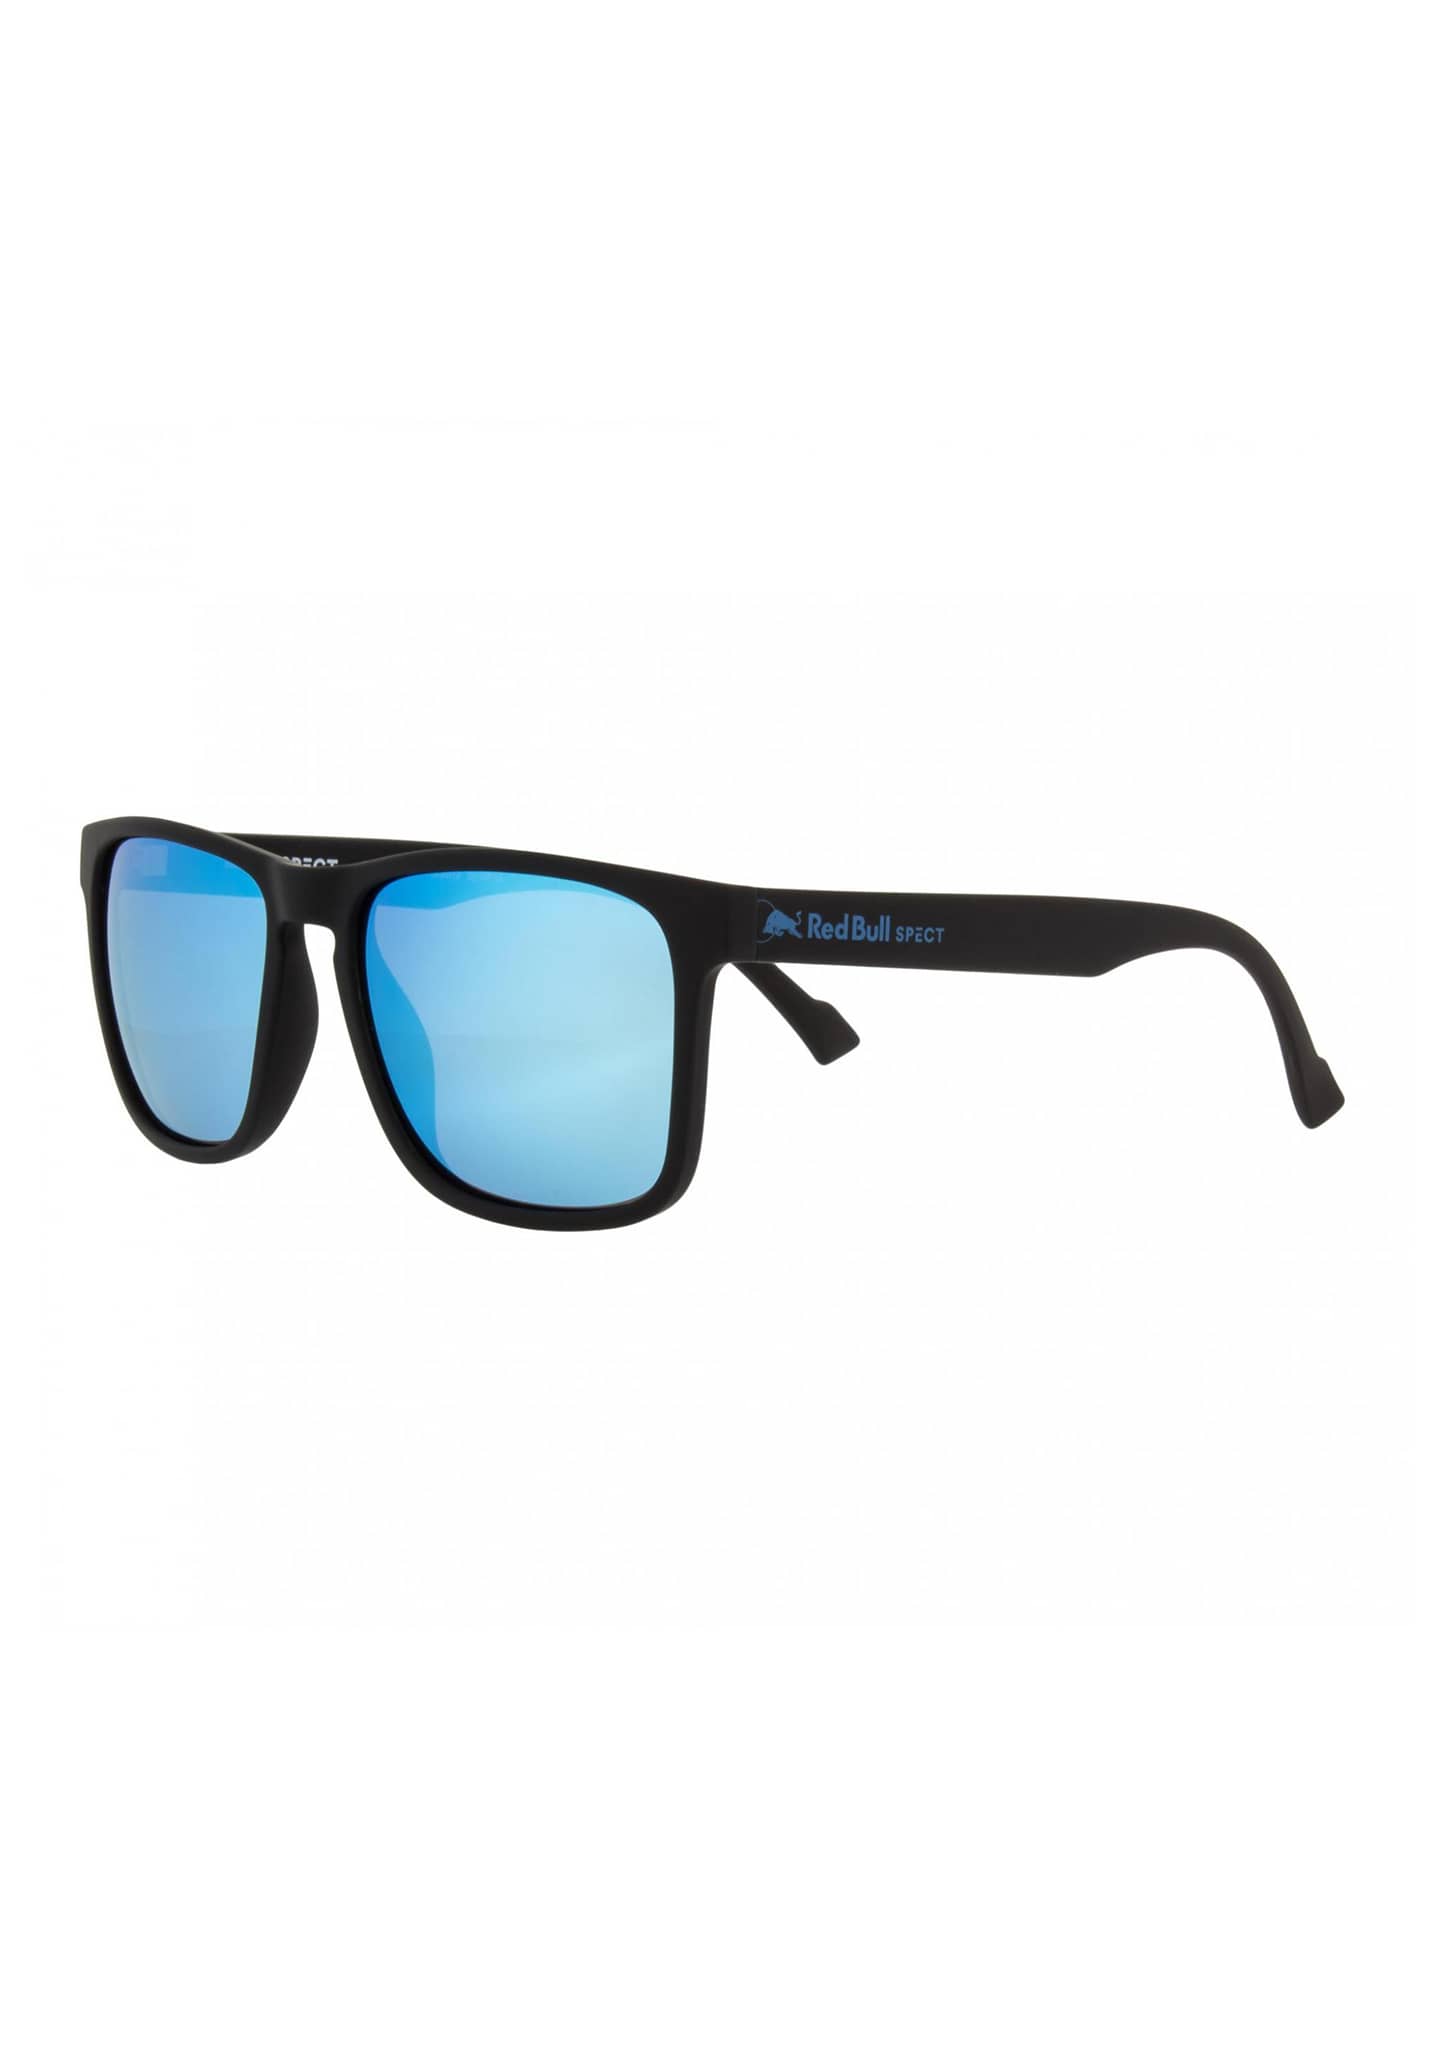 Red Bull SPECT Eyewear Leap Sonnenbrillen schwarz/rauch mit eisblauem spiegel pol One Size